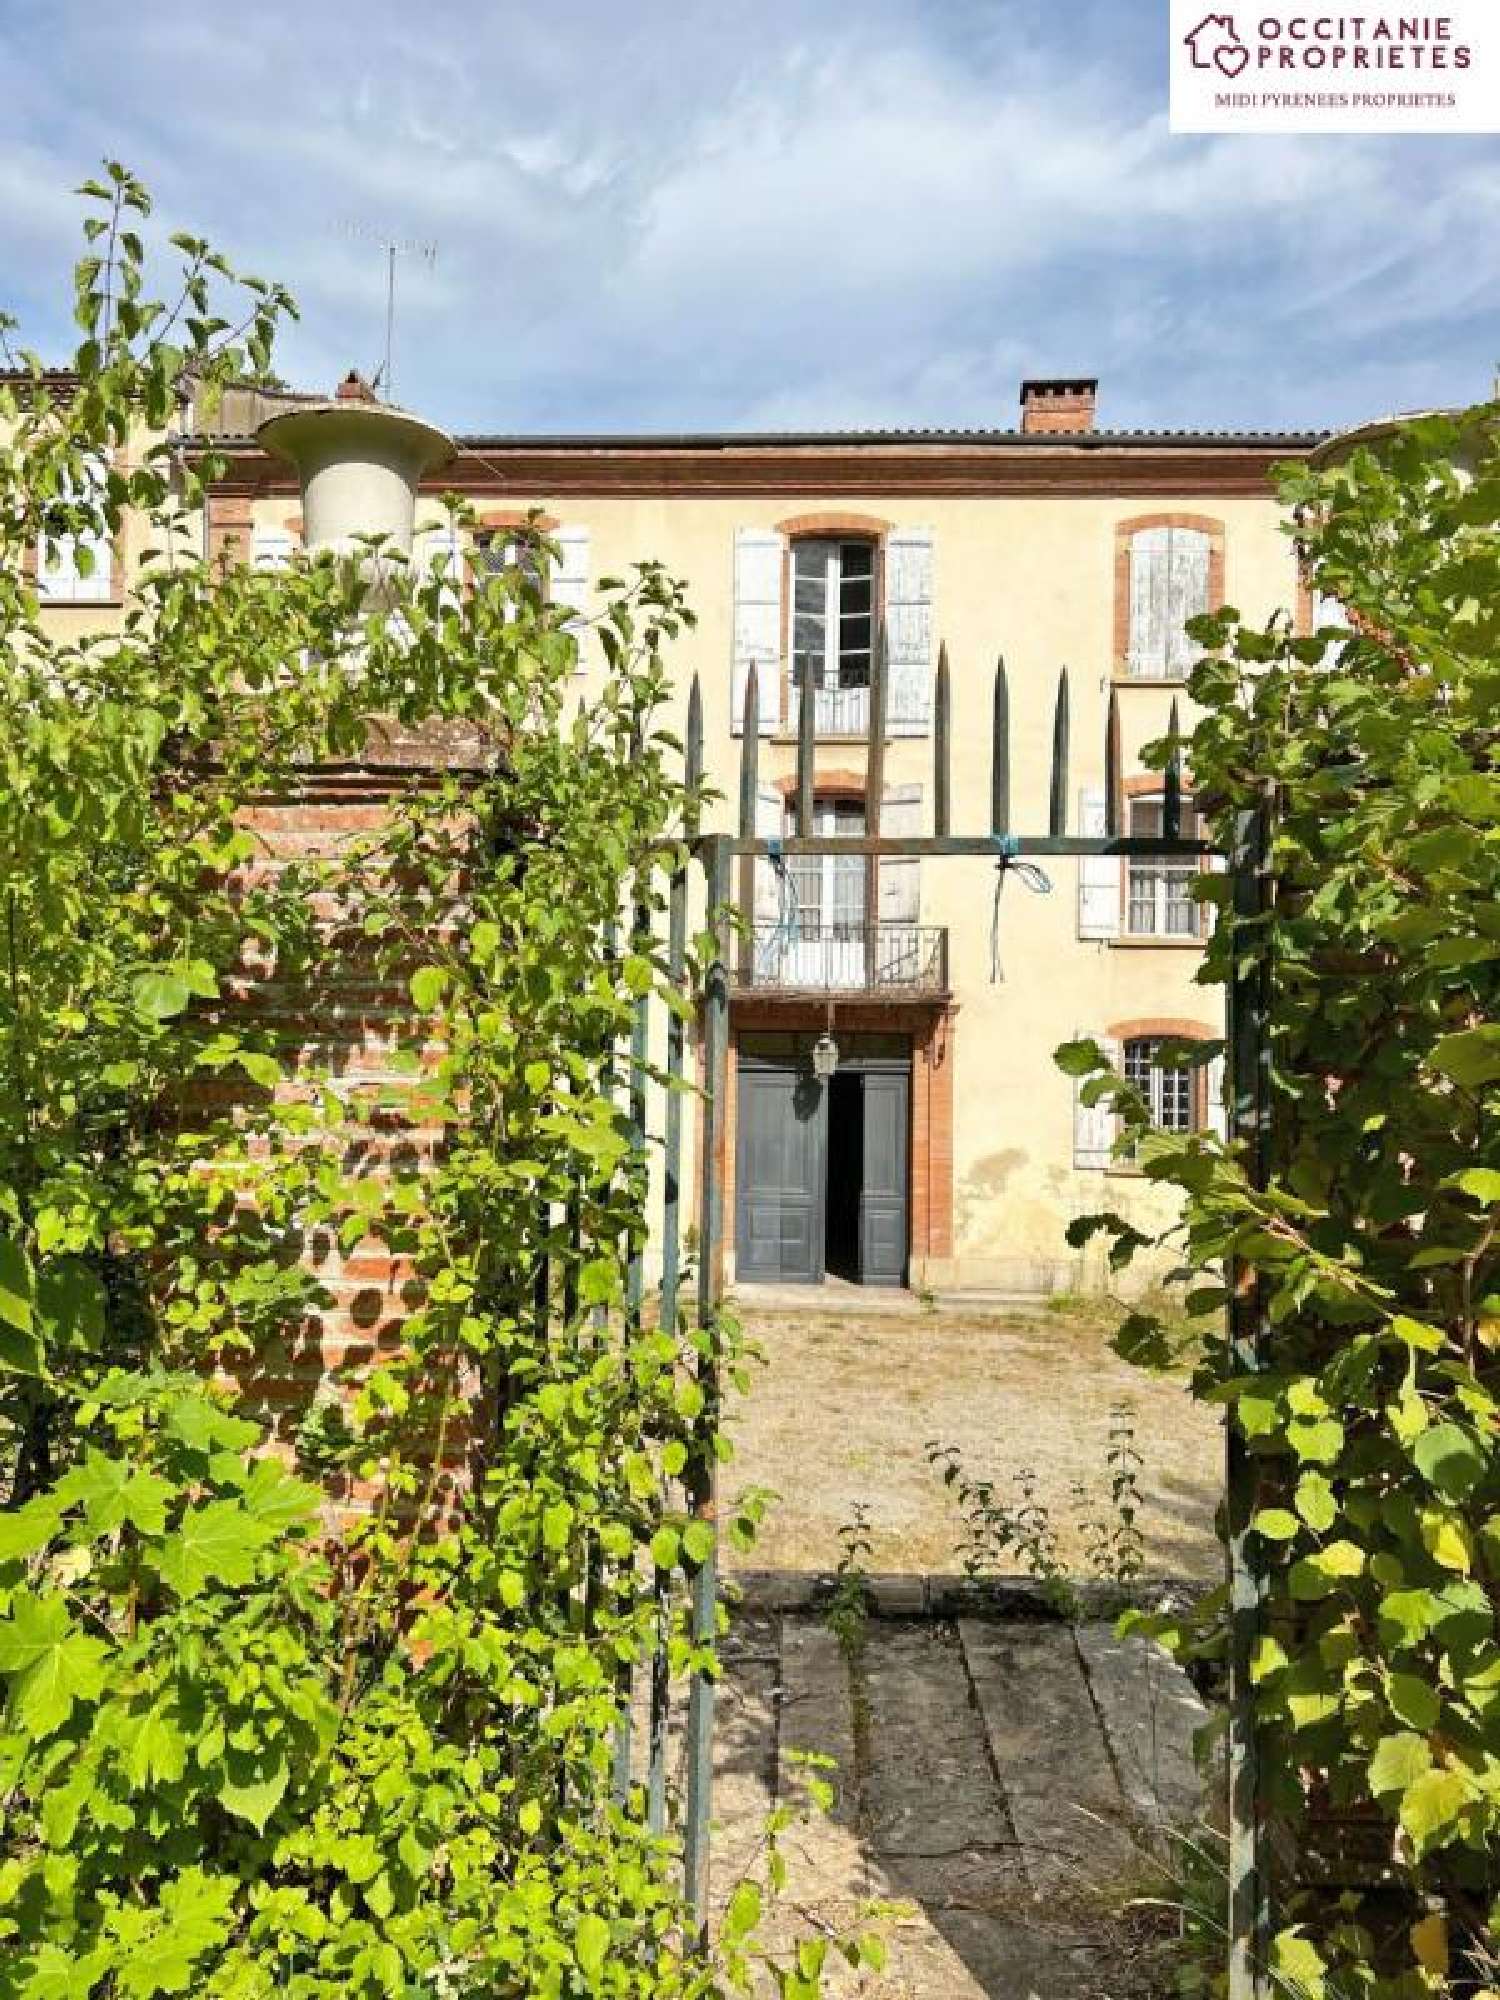  à vendre villa Pamiers Ariège 3